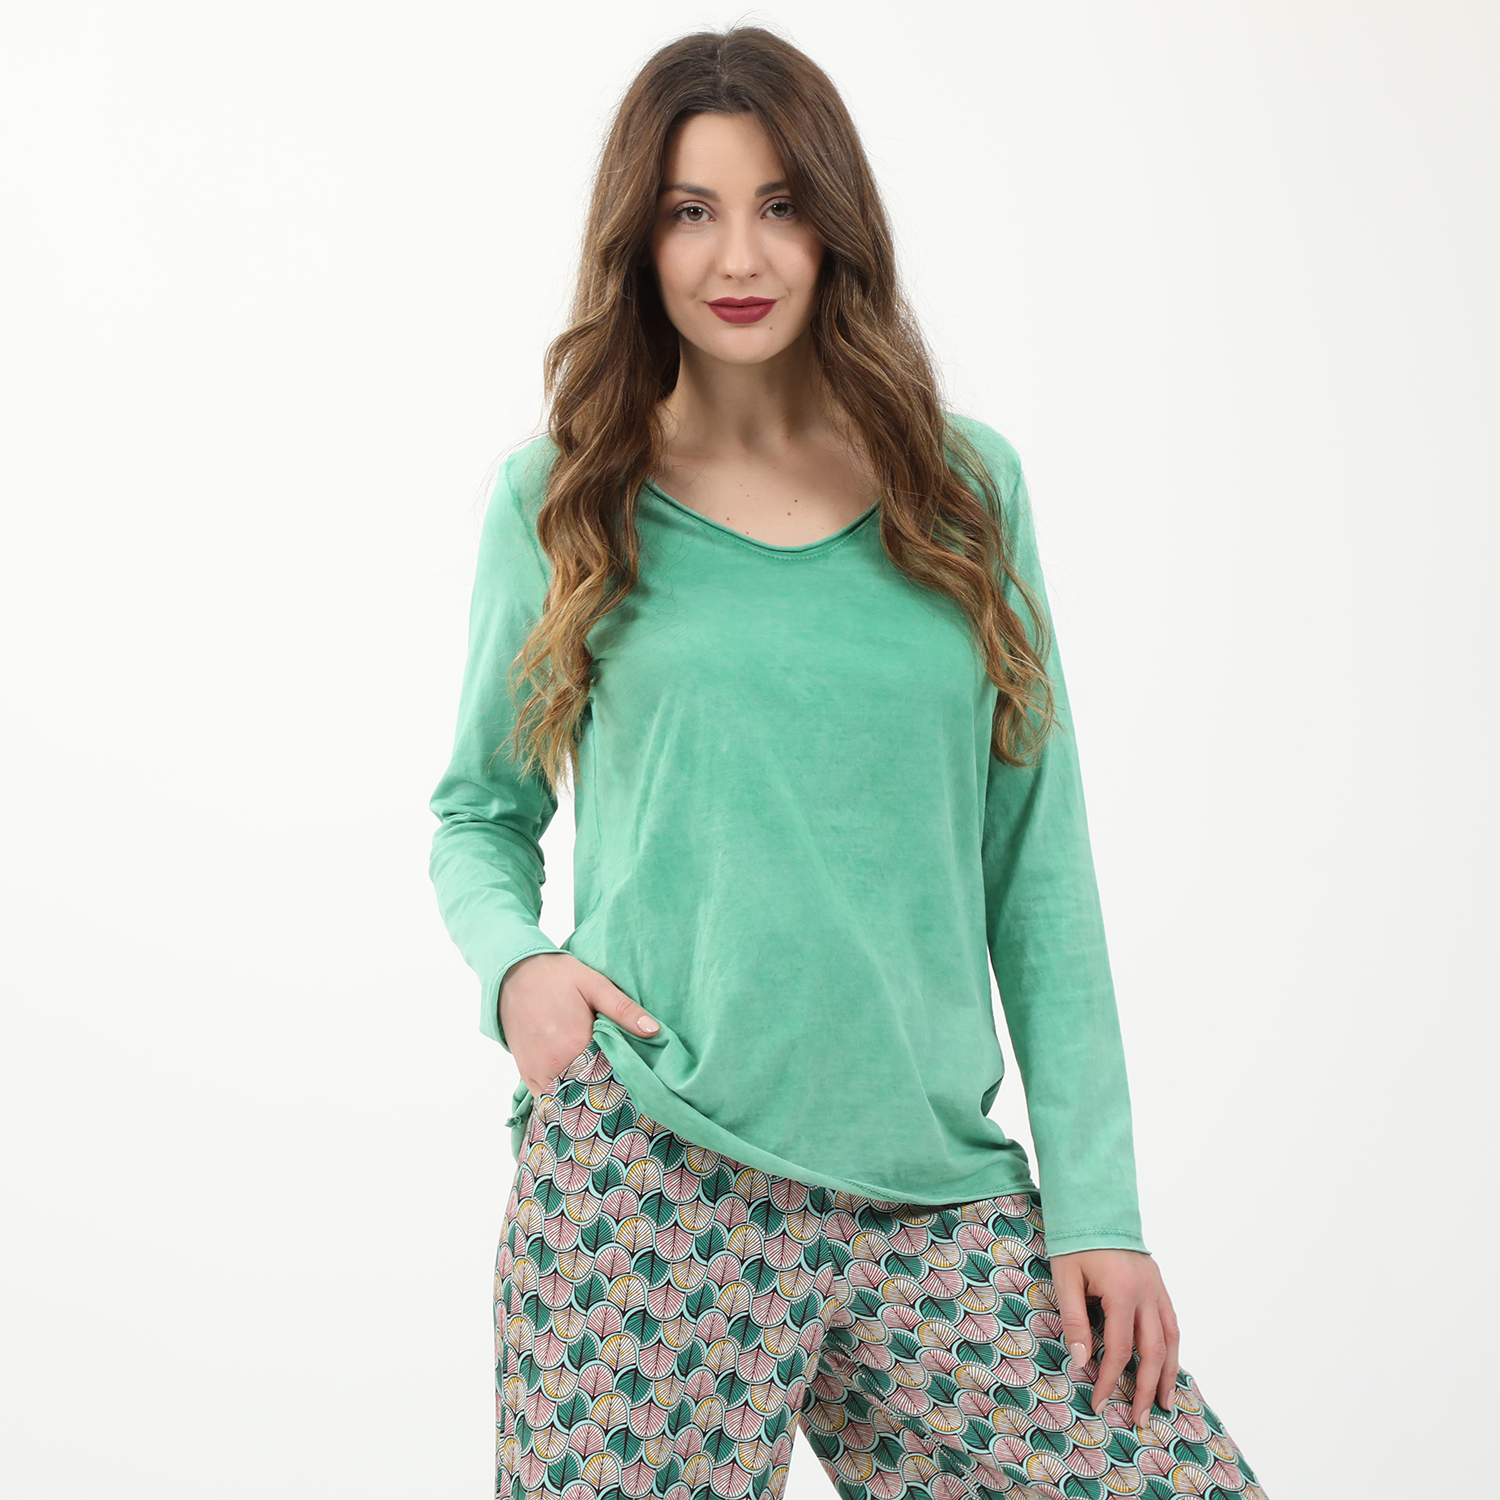 Γυναικεία/Ρούχα/Μπλούζες/Μακρυμάνικες 'ALE - Γυναικεία μπλούζα 'ALE πράσινη